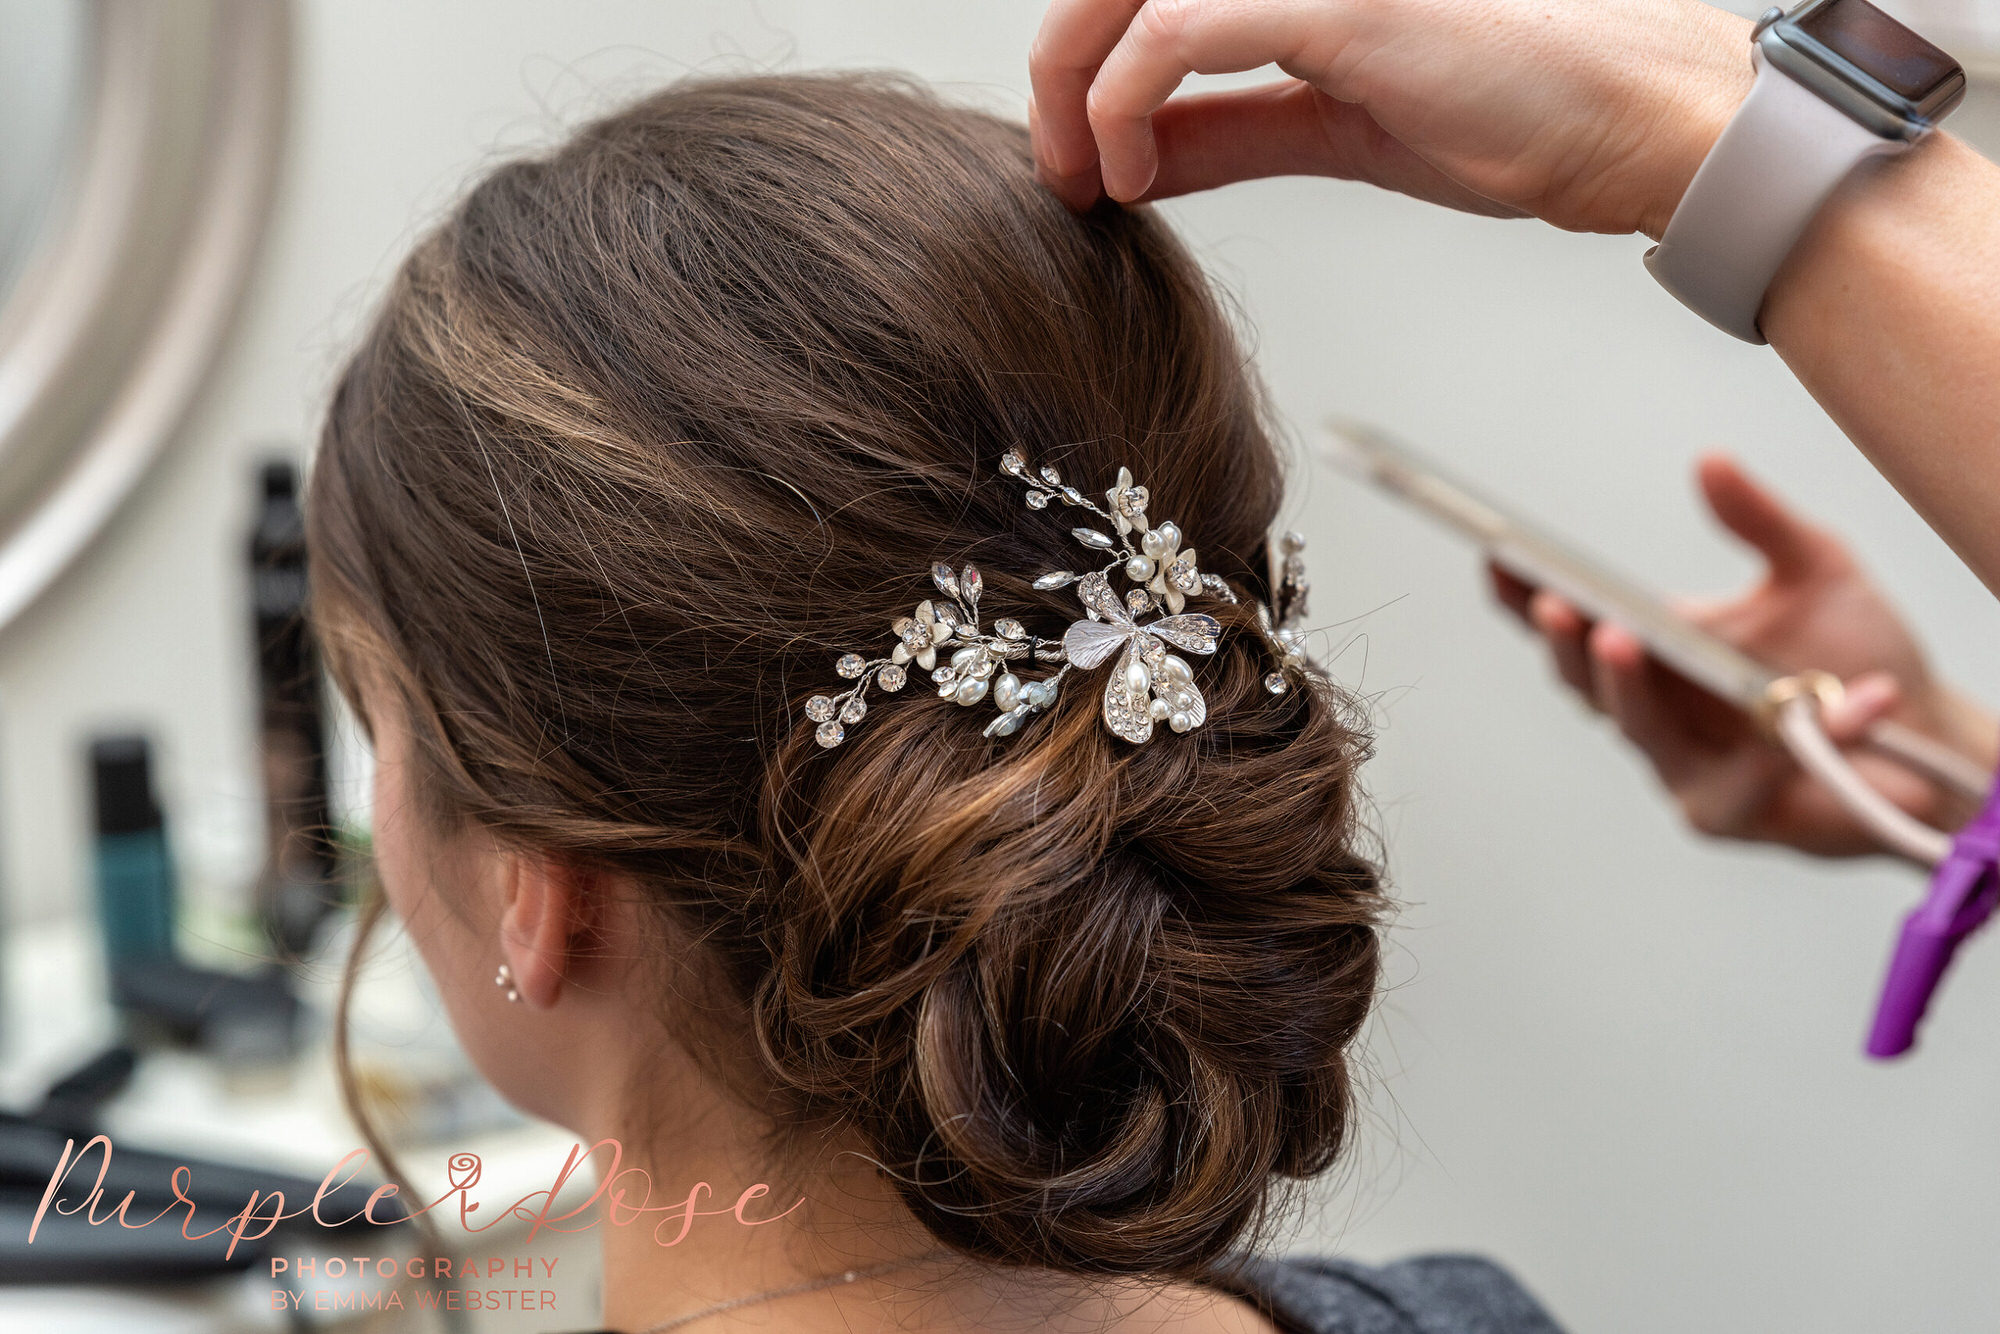 Brides hair being adjusted